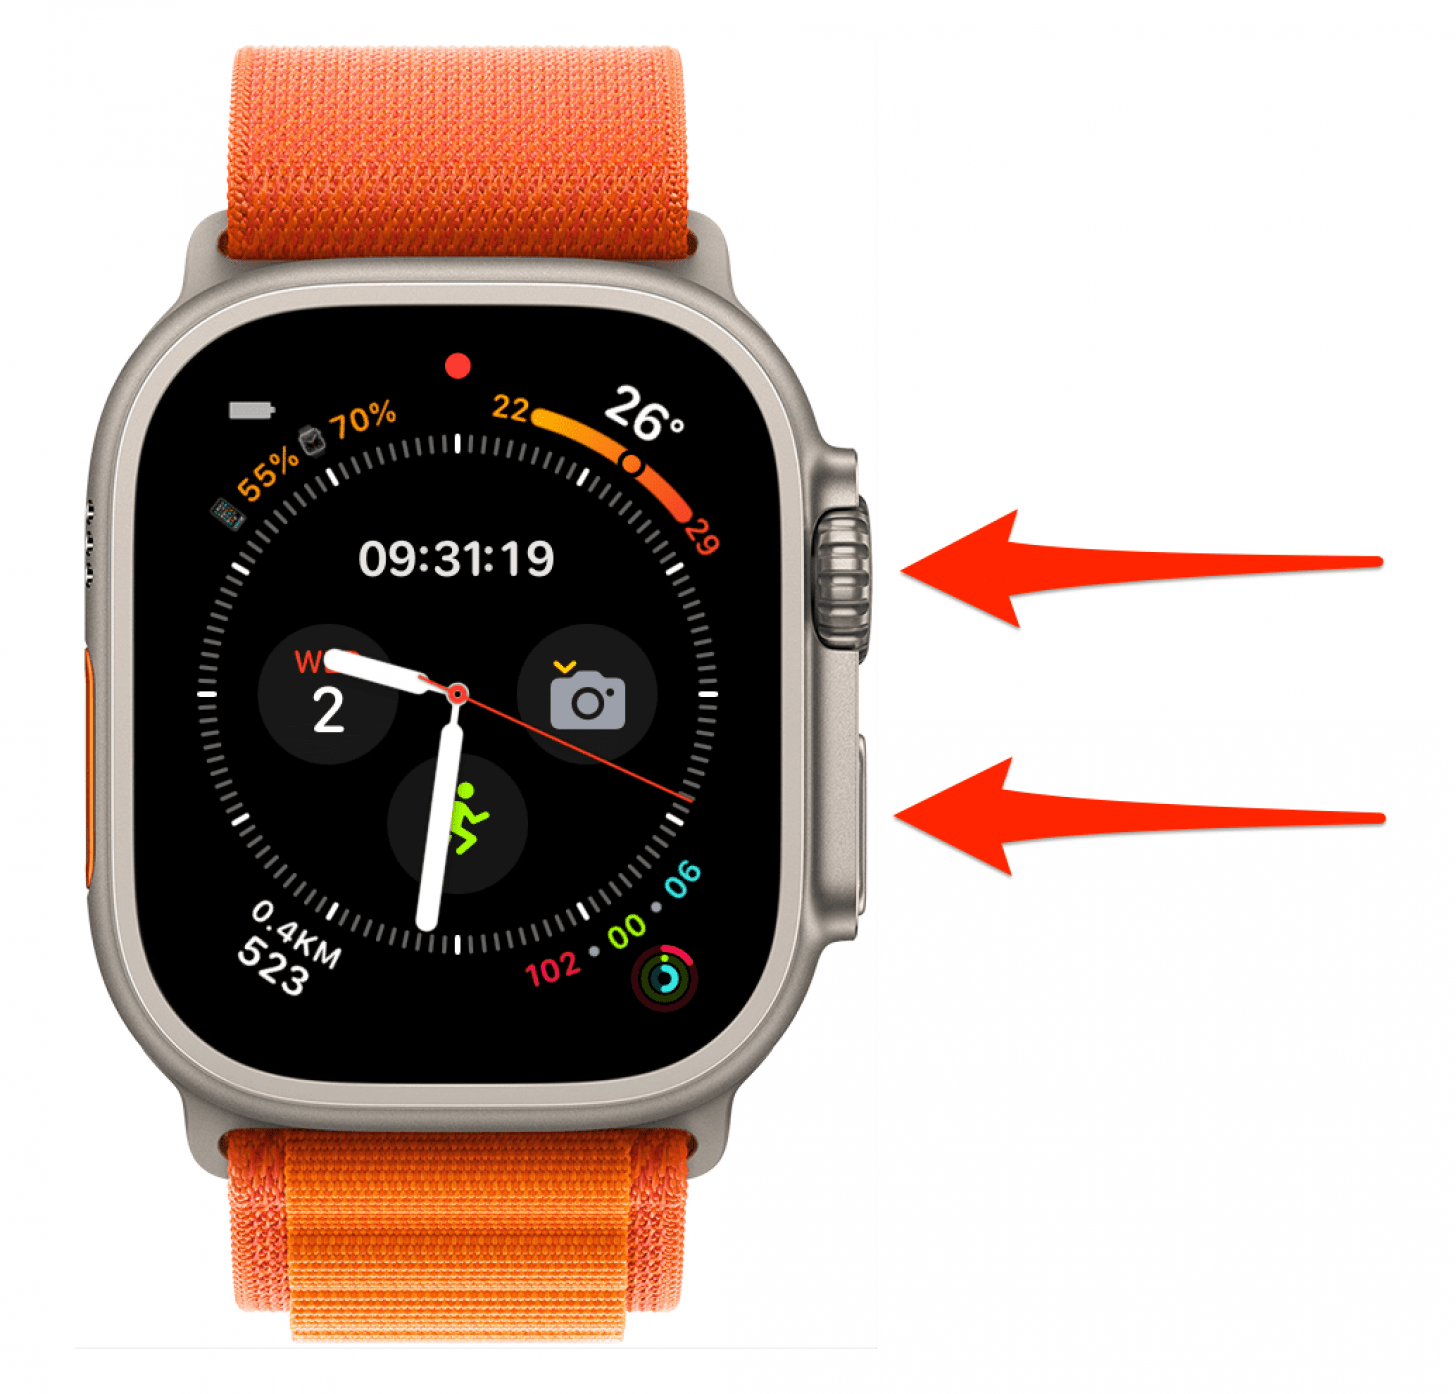 Para forzar el reinicio o el restablecimiento completo del Apple Watch: mantén presionados el botón lateral y Digital Crown simultáneamente durante 10 segundos y luego suéltalos.